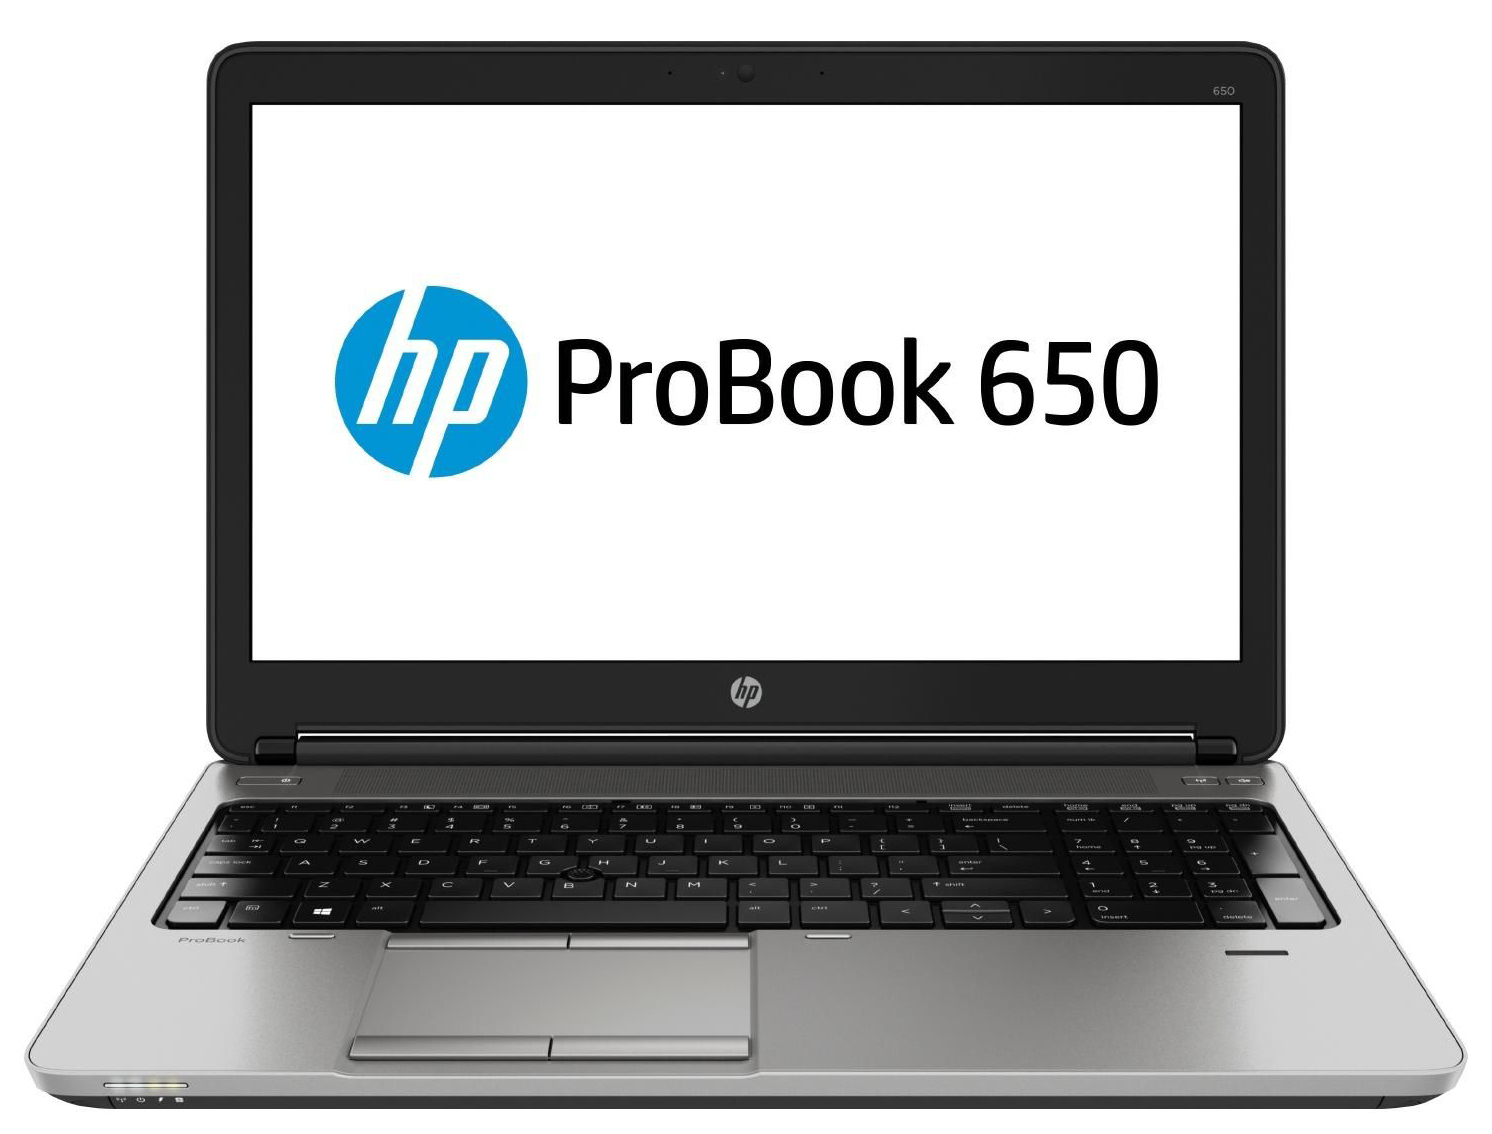 HP ProBook 650 Series - Notebookcheck.net External Reviews